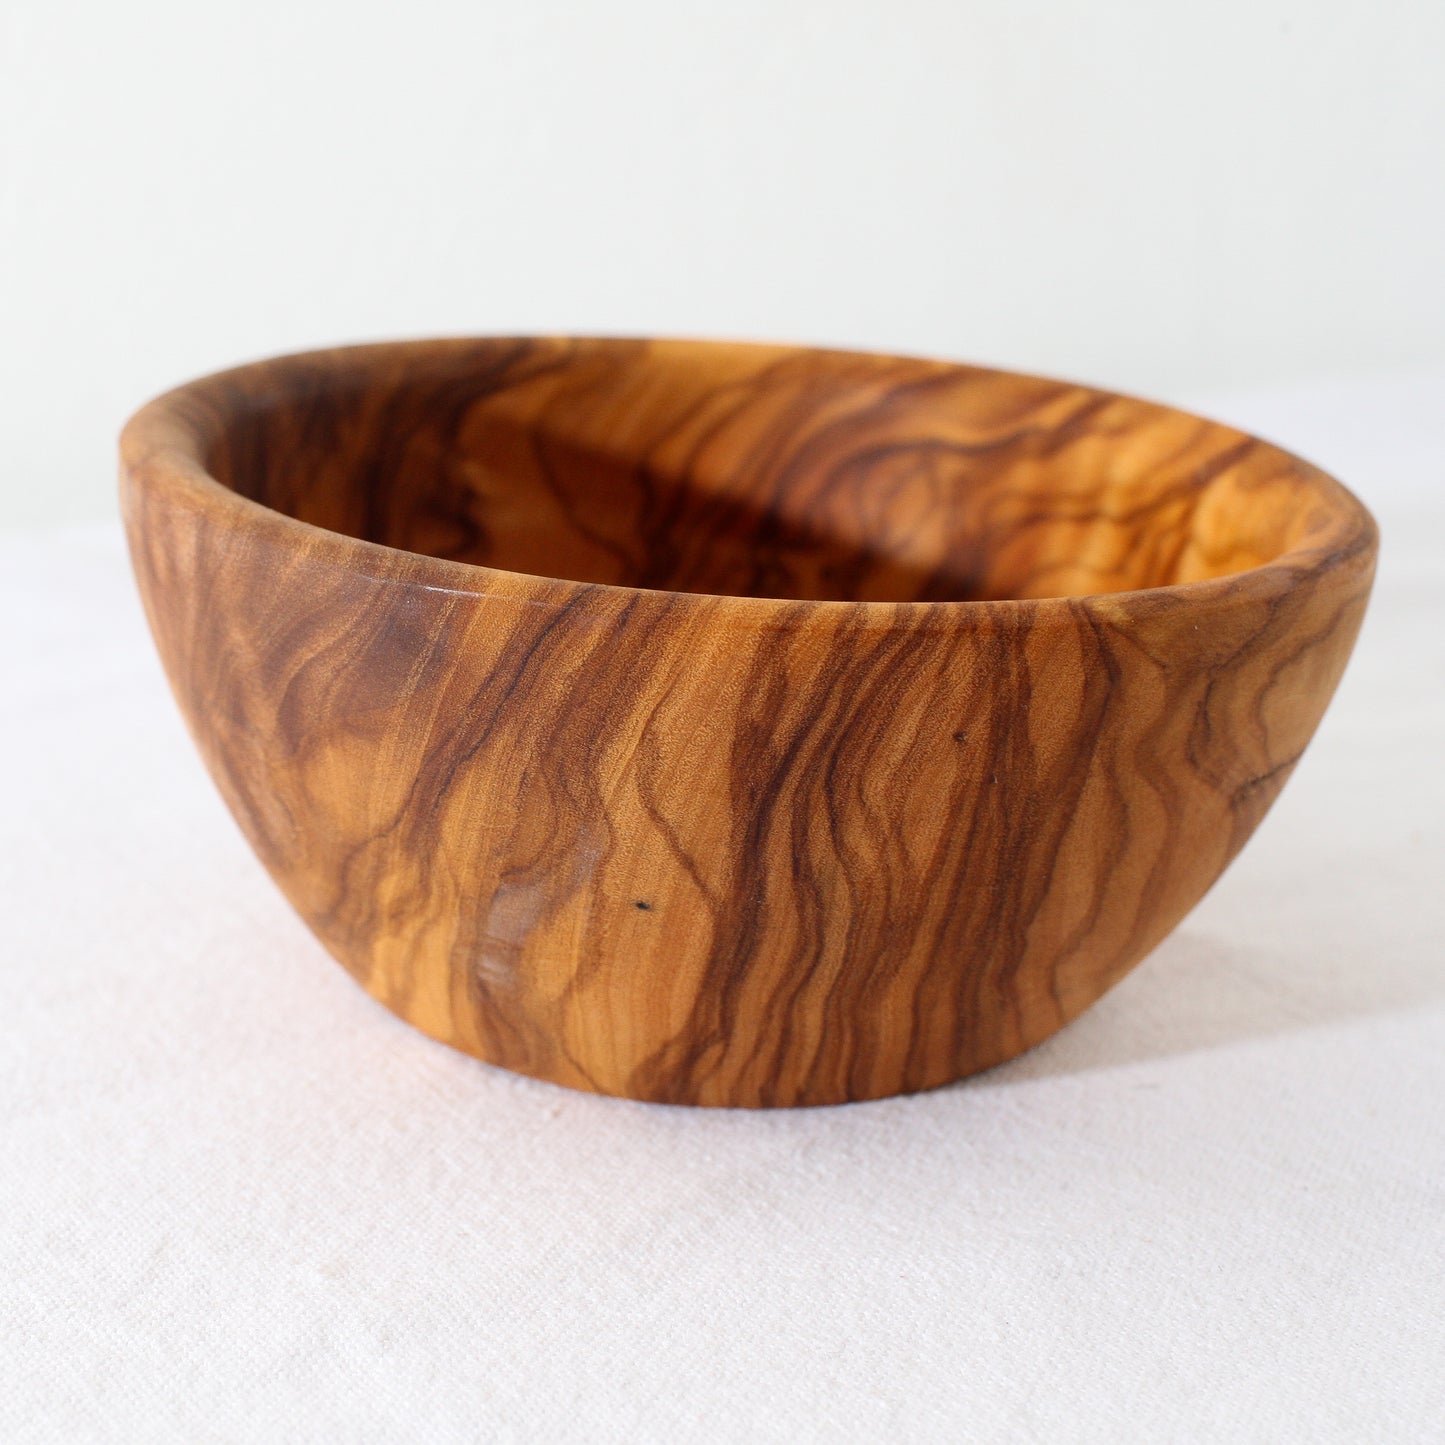 Olive Wood Snack Bowl 4.75”